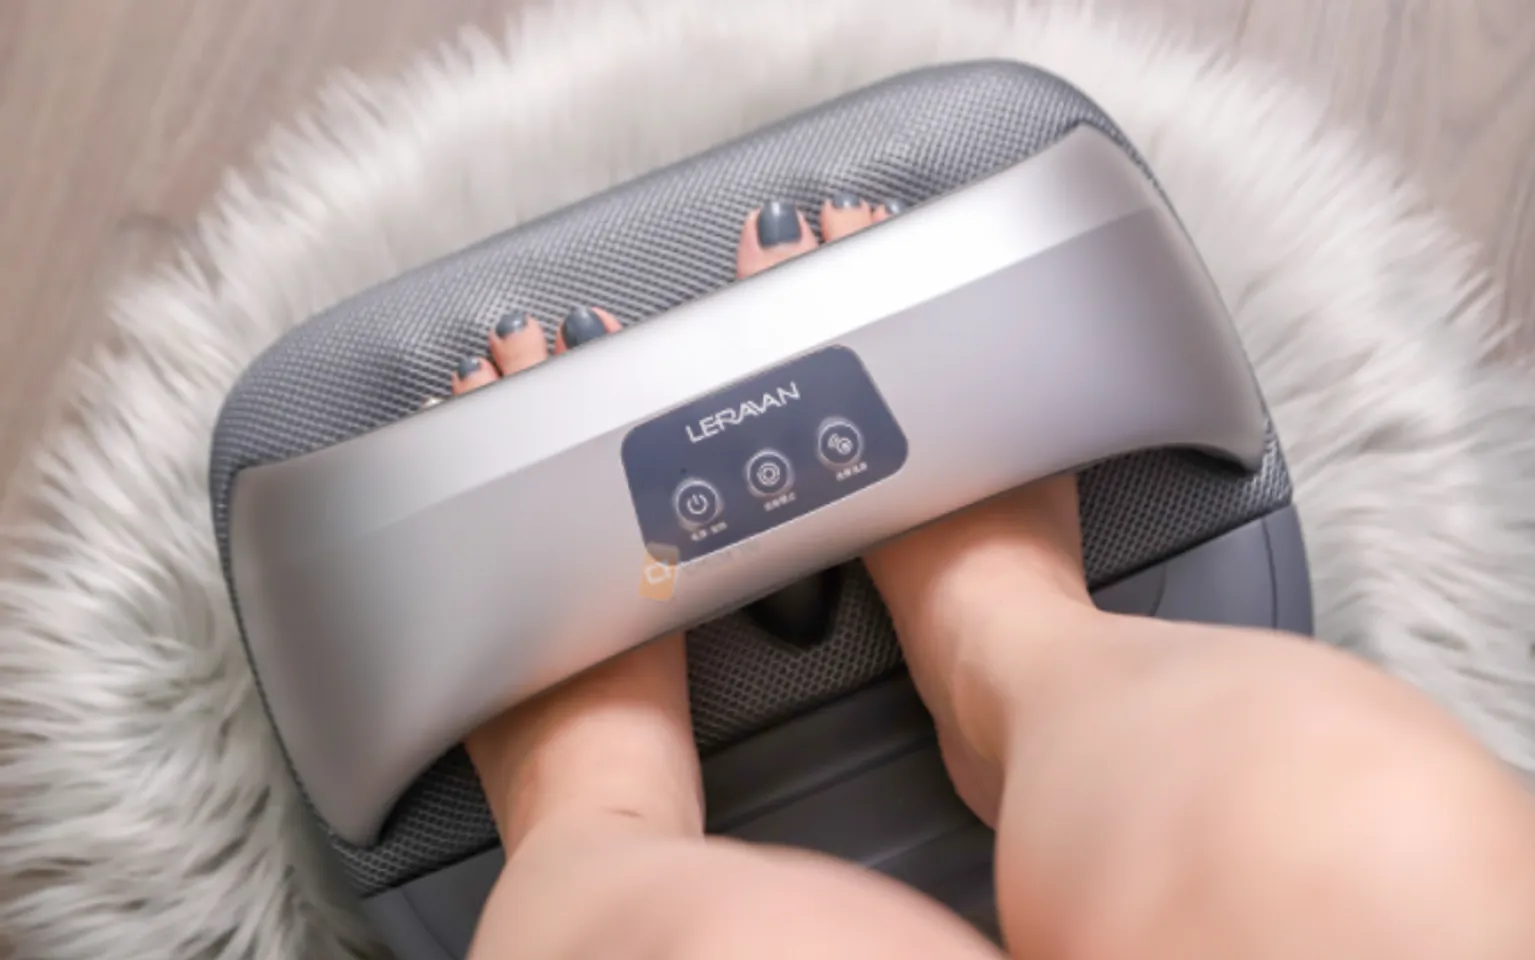 Máy massage chân Xiaomi Leravan LJF003